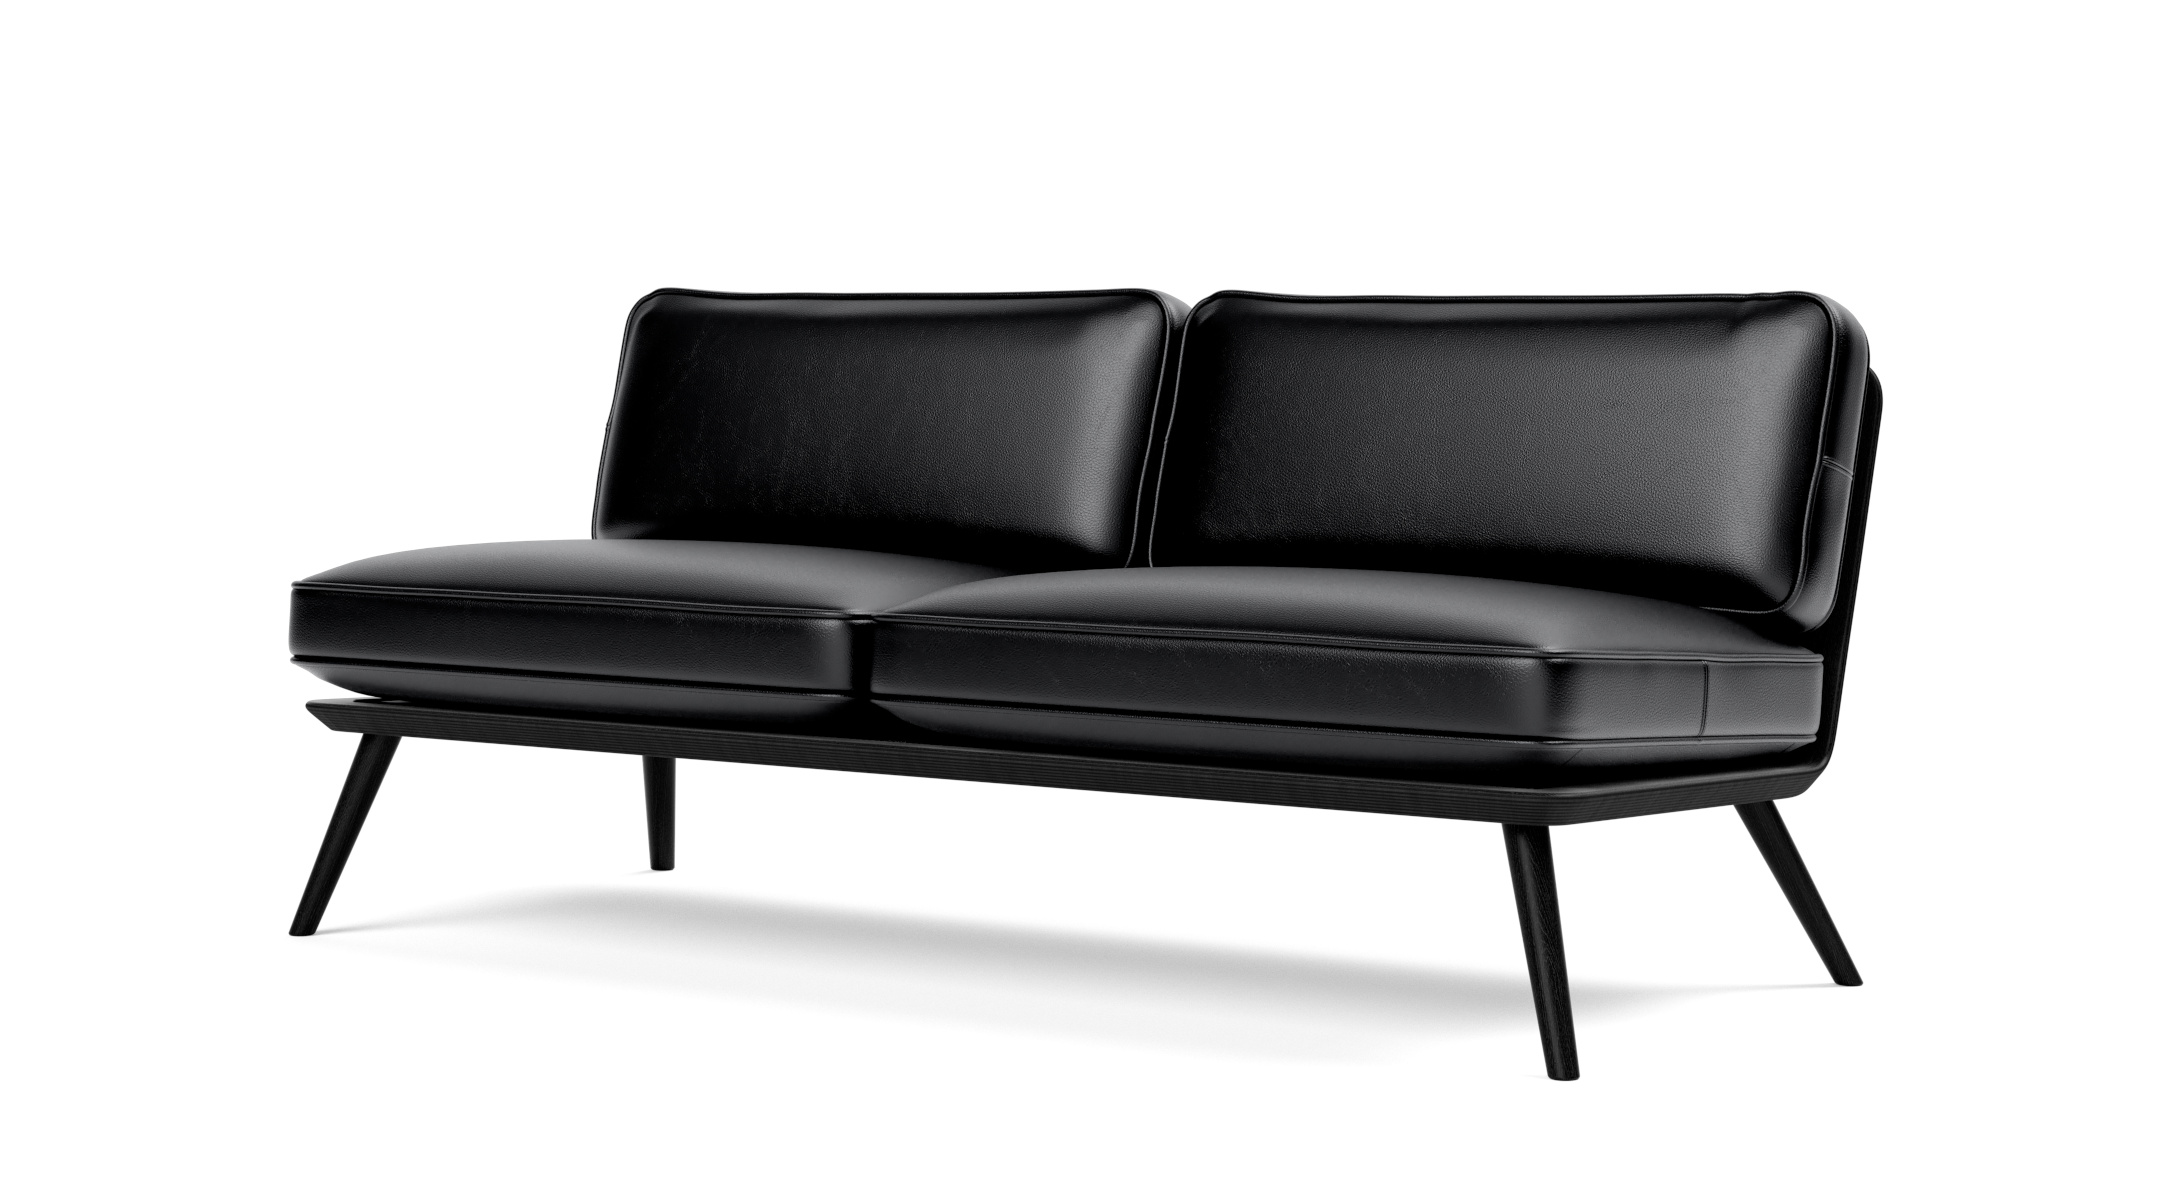 Spine Lounge Suite Sofa, esche schwarz / leder primo 88 schwarz